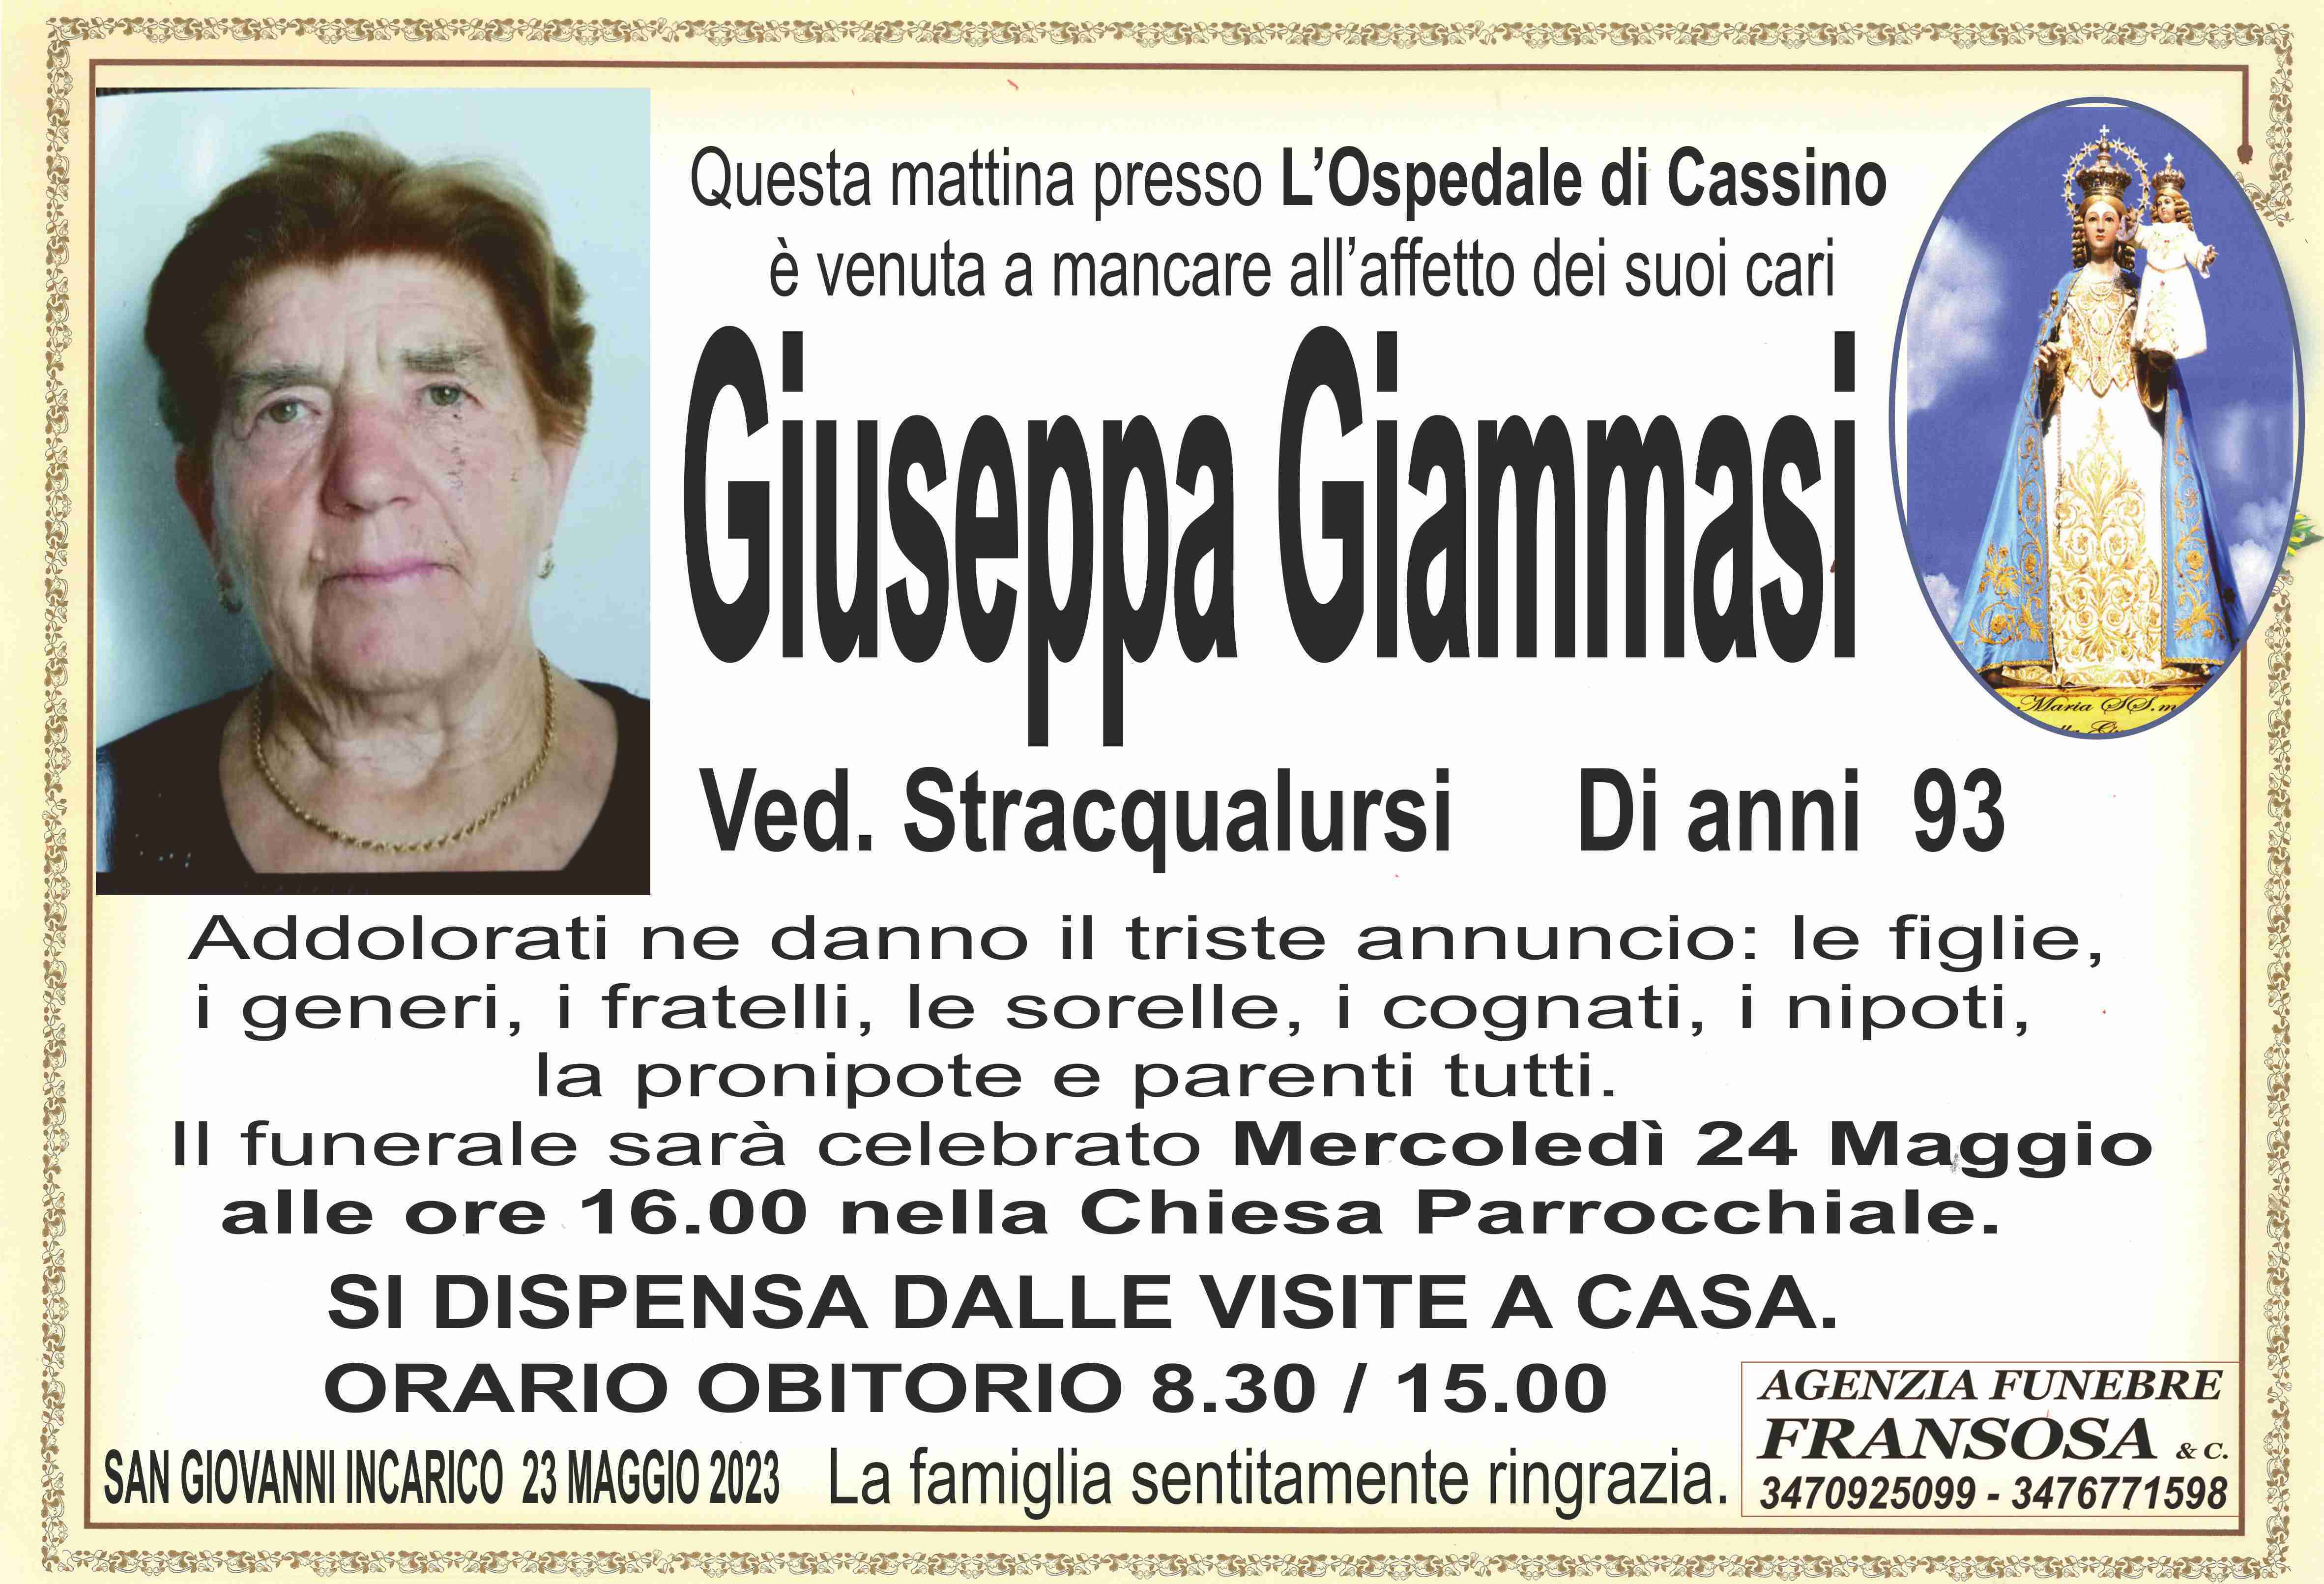 Giuseppa Giammasi